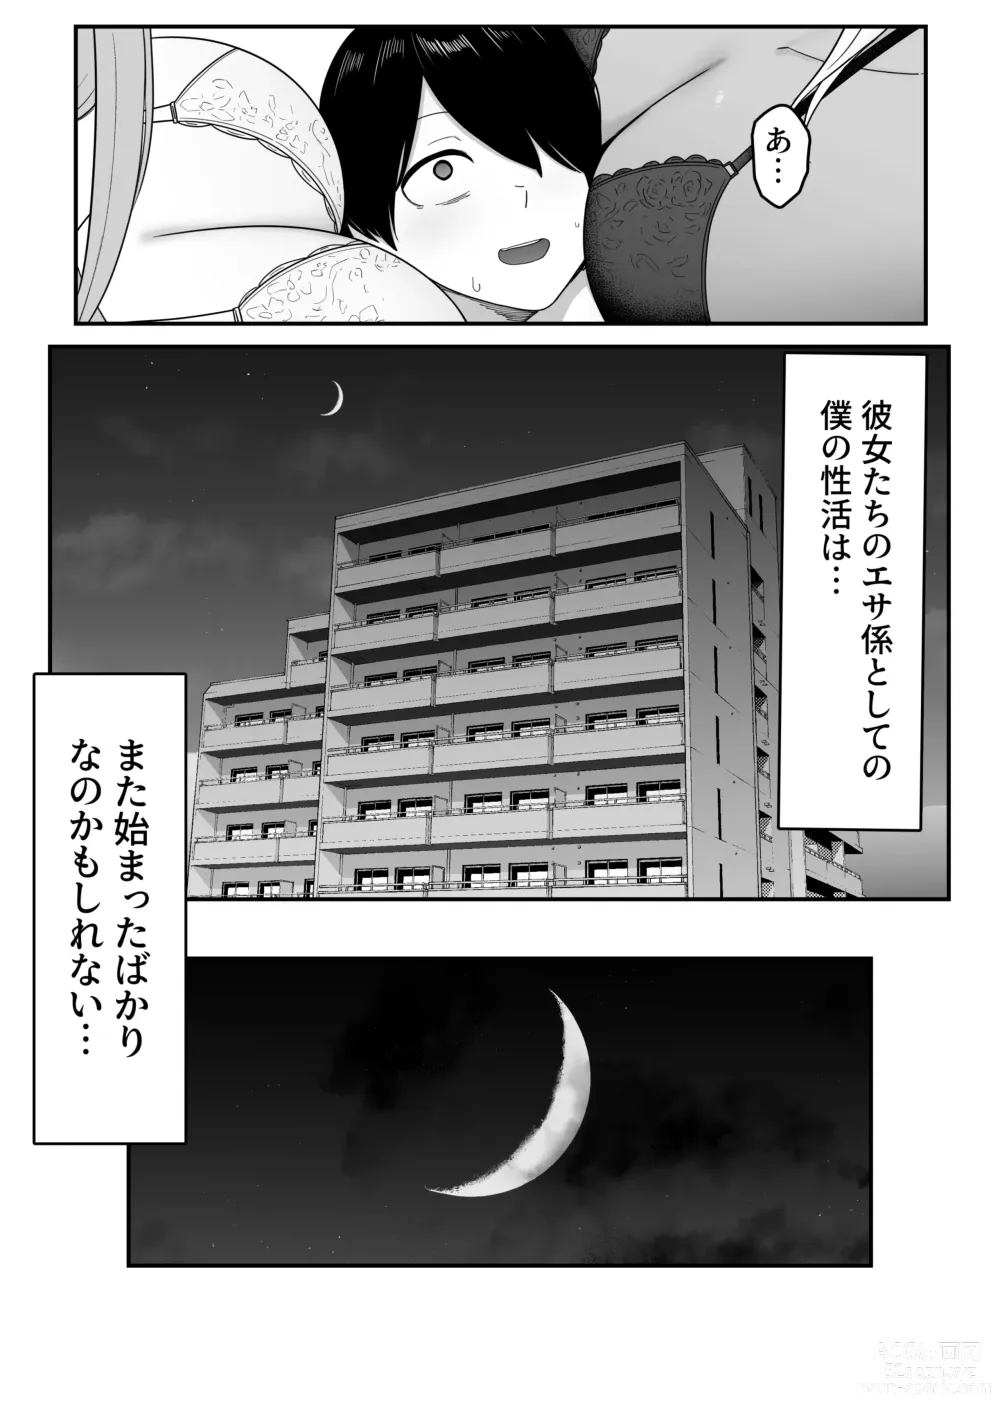 Page 63 of doujinshi Inma no Esa-gakari ni  Narimashita.